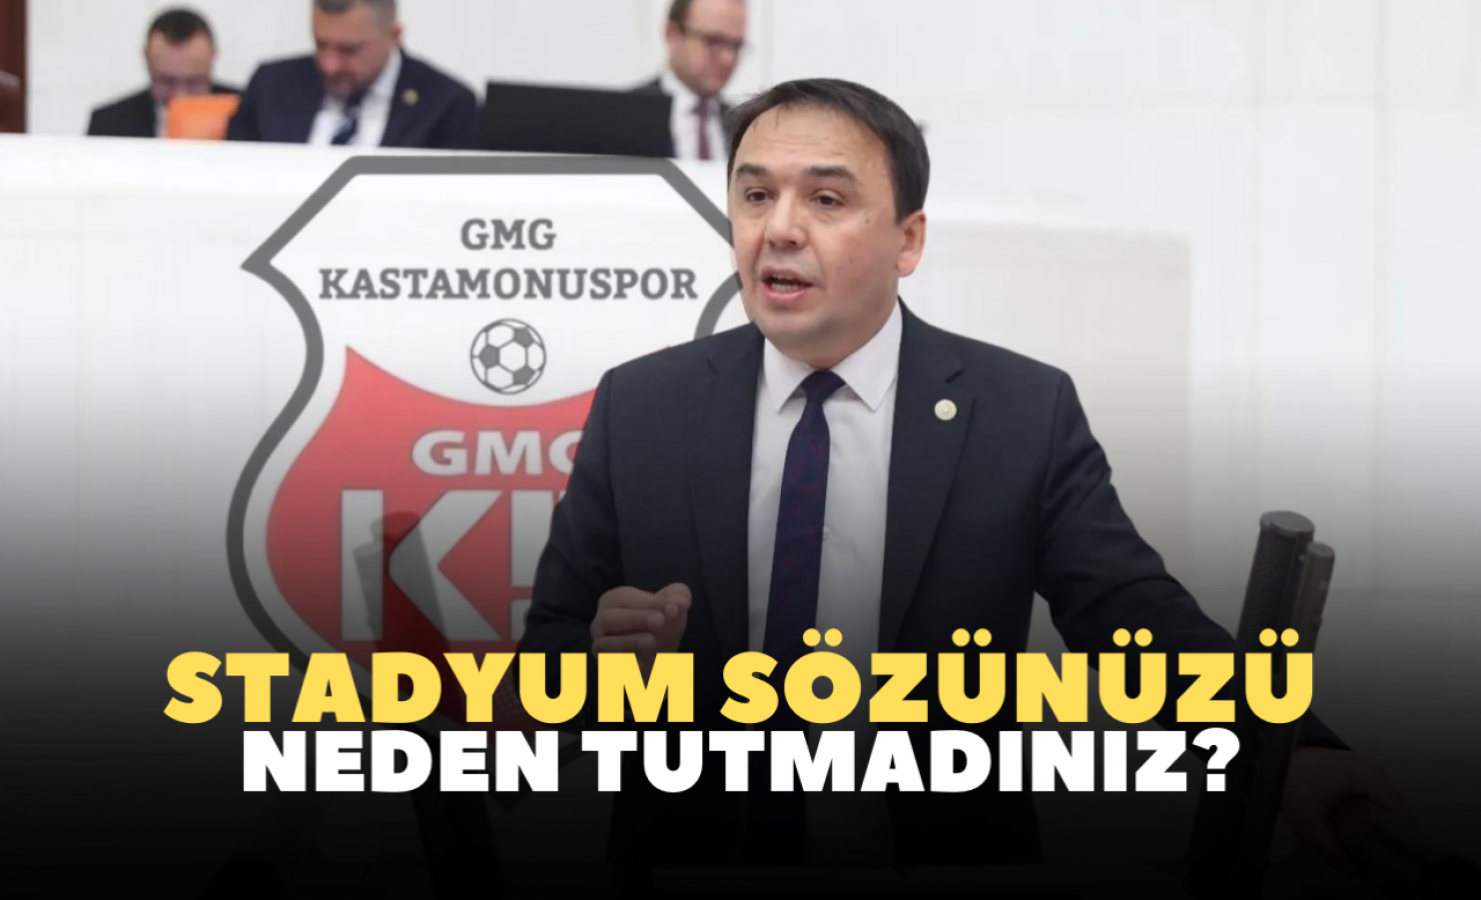 Milletvekili Baltacı, GMG Kastamonuspor'u TBMM'ye taşıdı!;